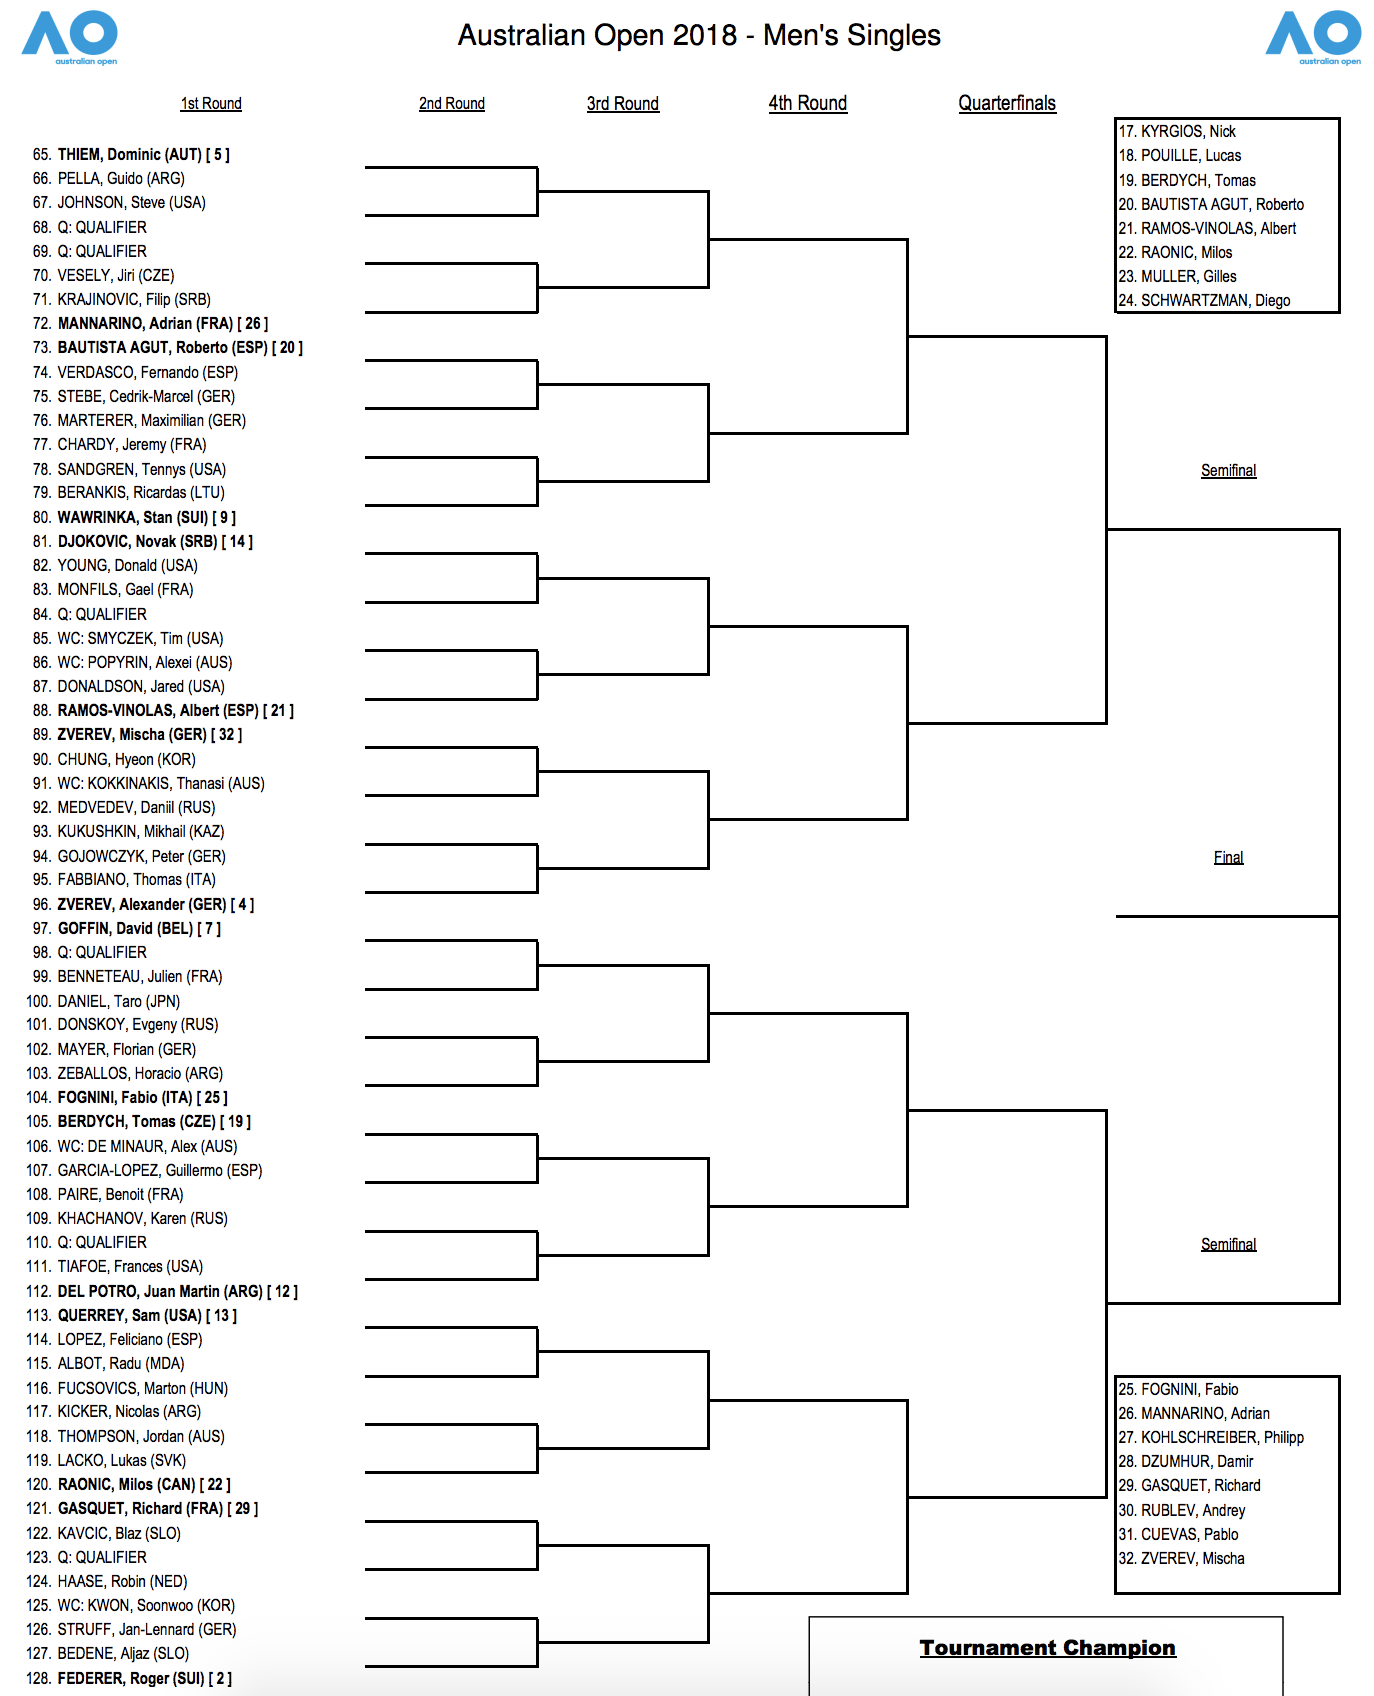 Australian Open Draw - Tennisnerd.net